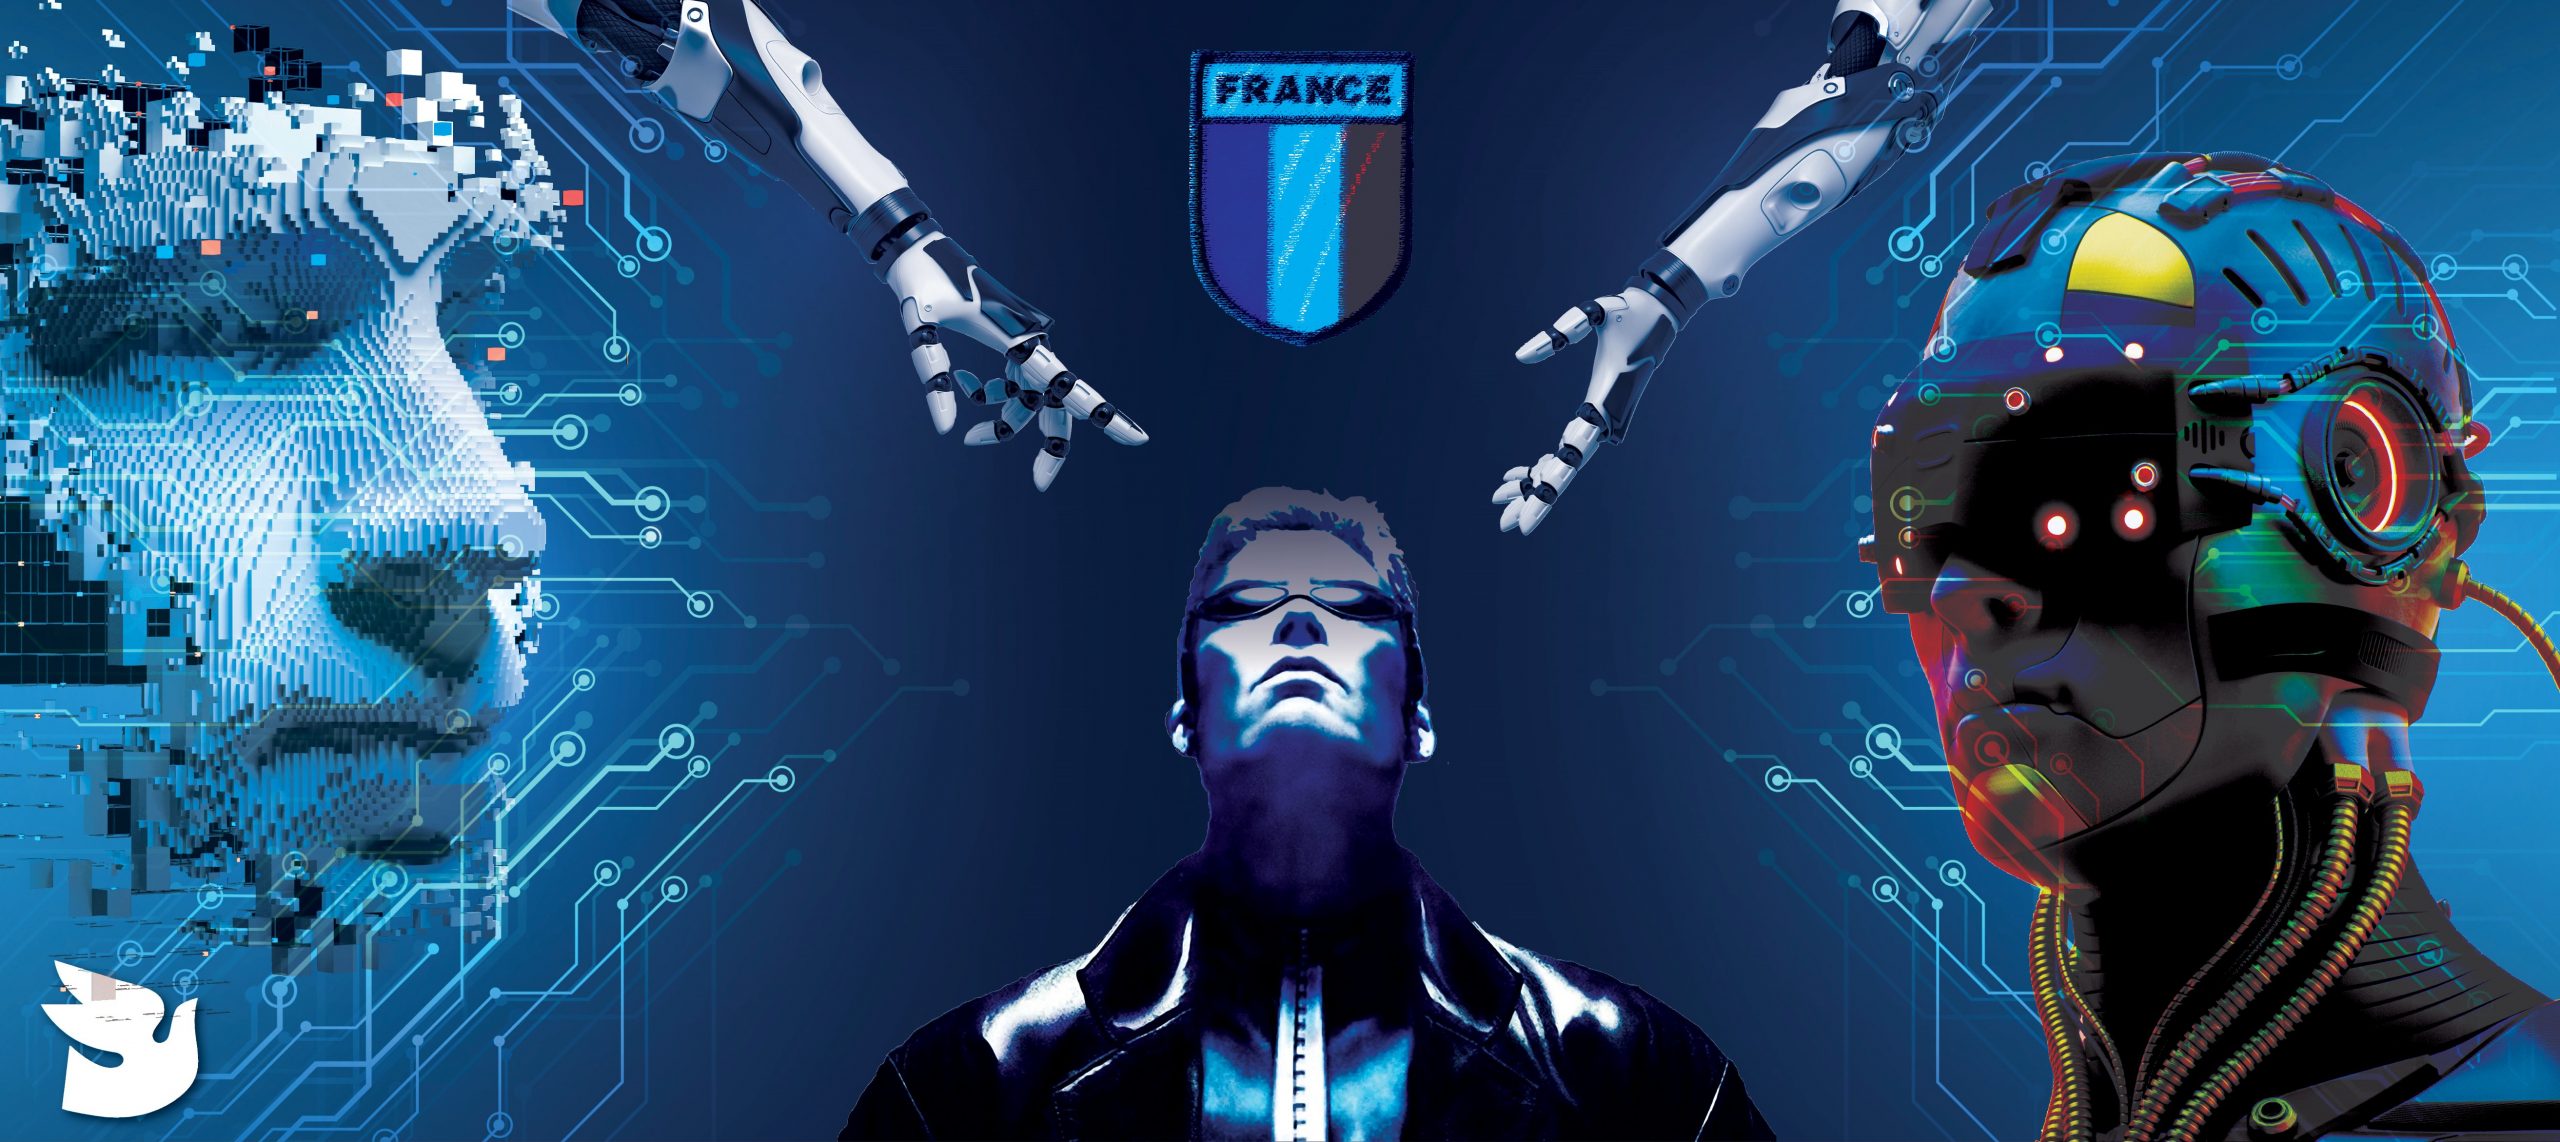 Γαλλικός Στρατός: Έγκριση για βιονικούς υπερστρατιώτες – Σε ρυθμούς cyberpunk οι Ένοπλες Δυνάμεις ισχυρών κρατών